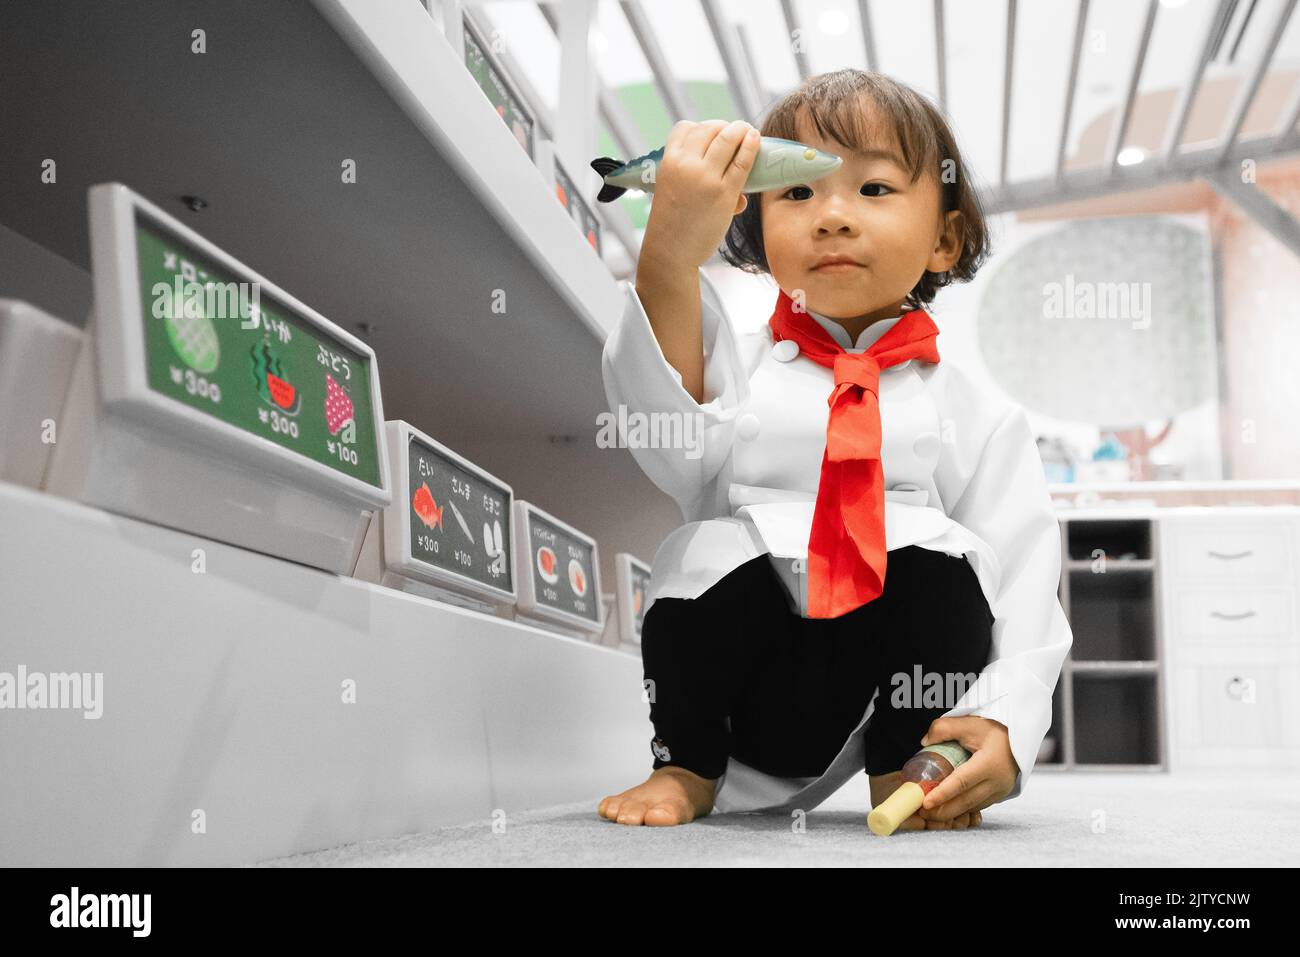 A toddler chef play pretend. Chef cook costume attire. Asian-Filipino girl. Stock Photo